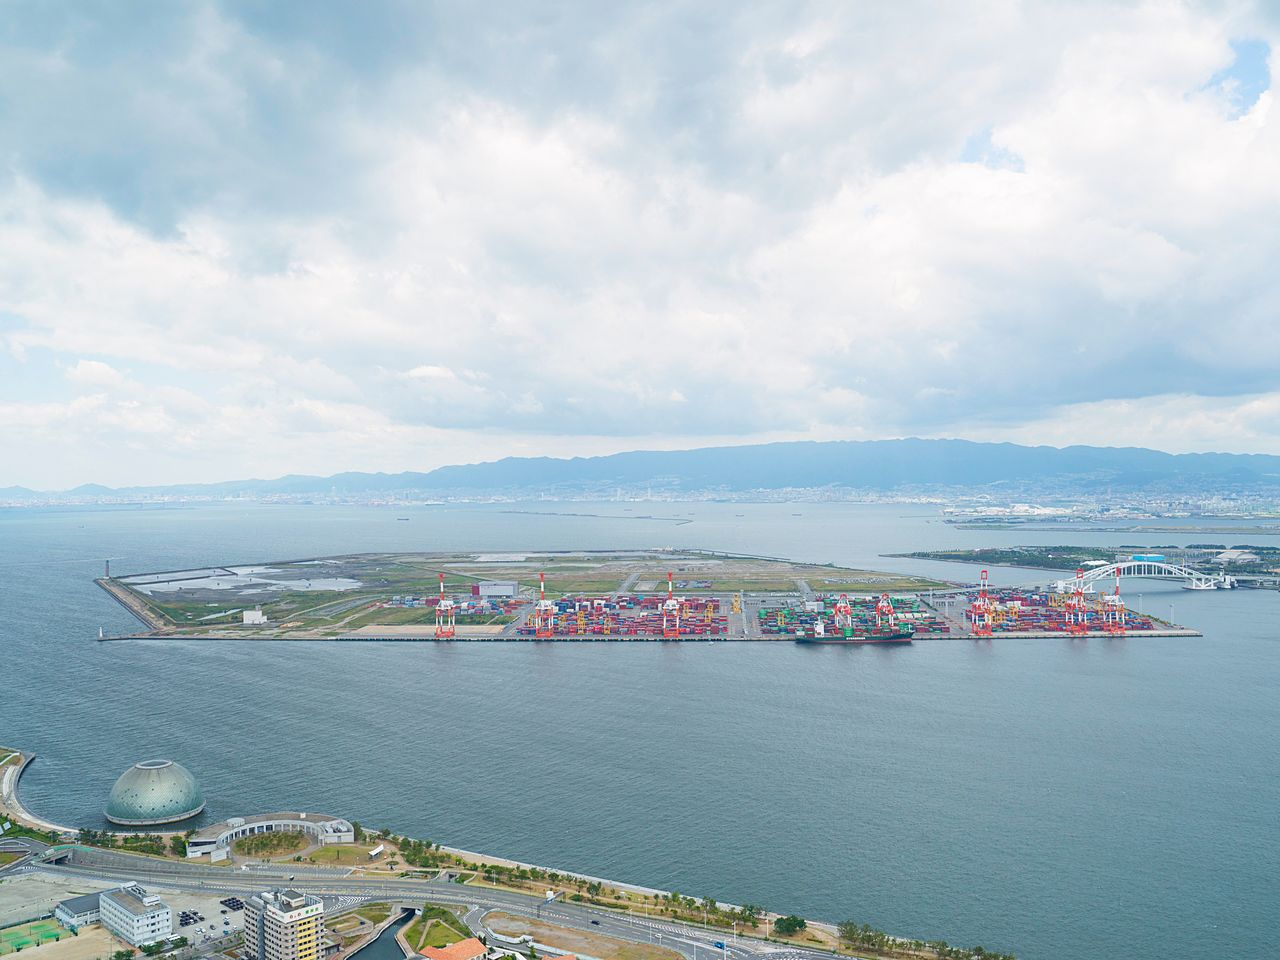 Yumeshima, qui accueillera l’Expo 2025. En juin 2019, seul signe d’activité : la présence de quelques conteneurs d'expédition. En arrière-plan, au-delà du pont, Maishima.